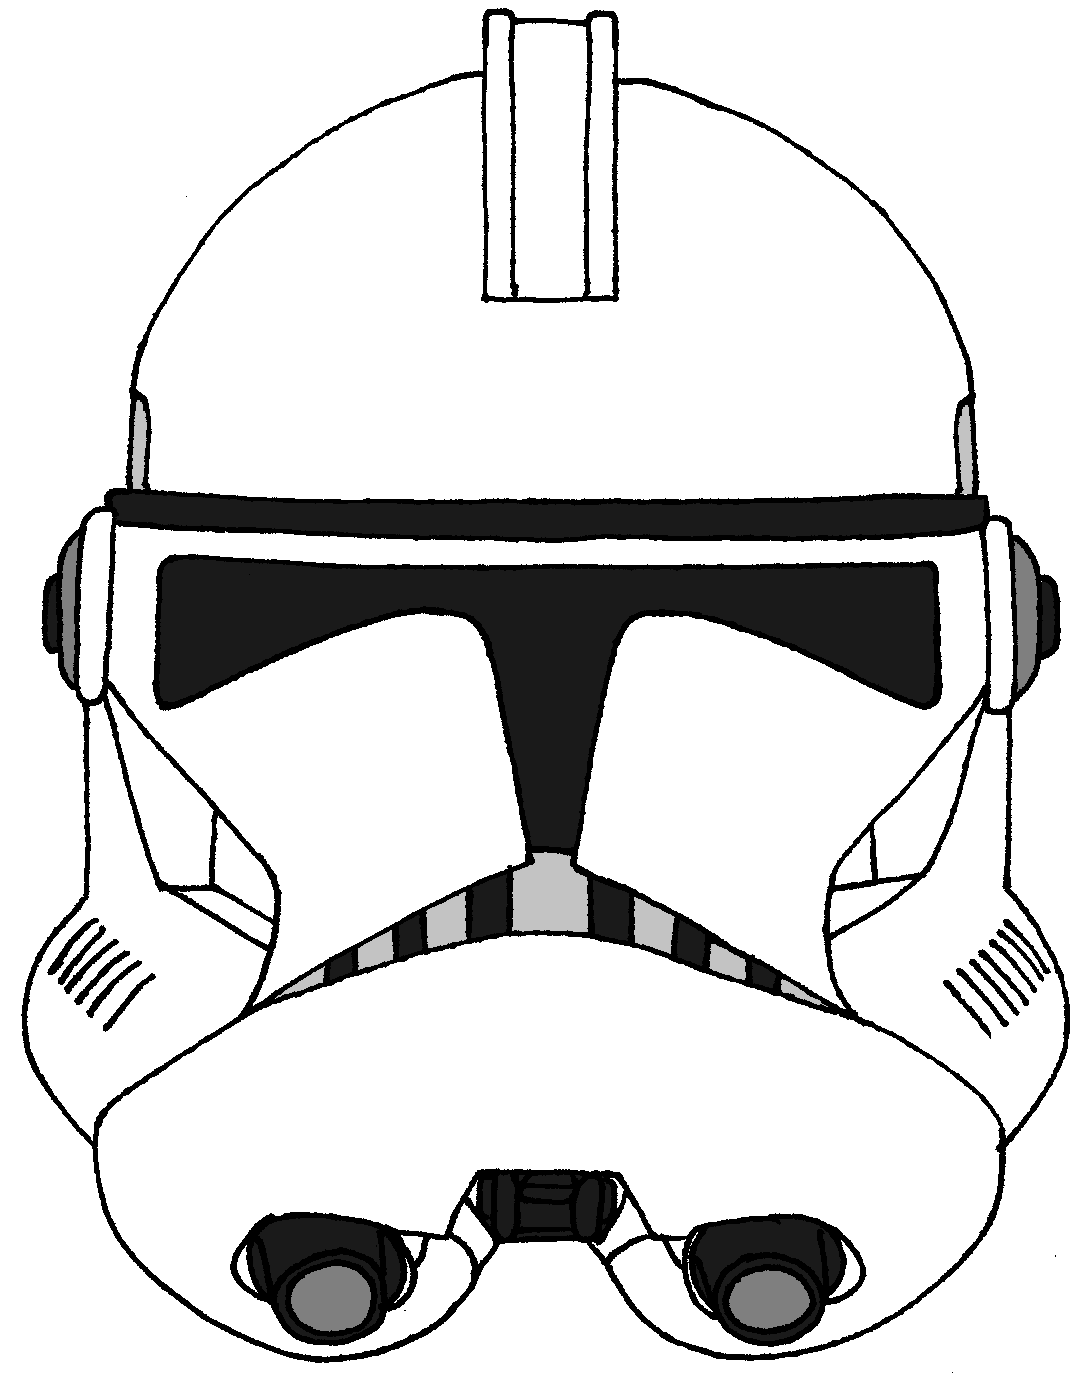 clone-trooper-helmet-drawing-15.png